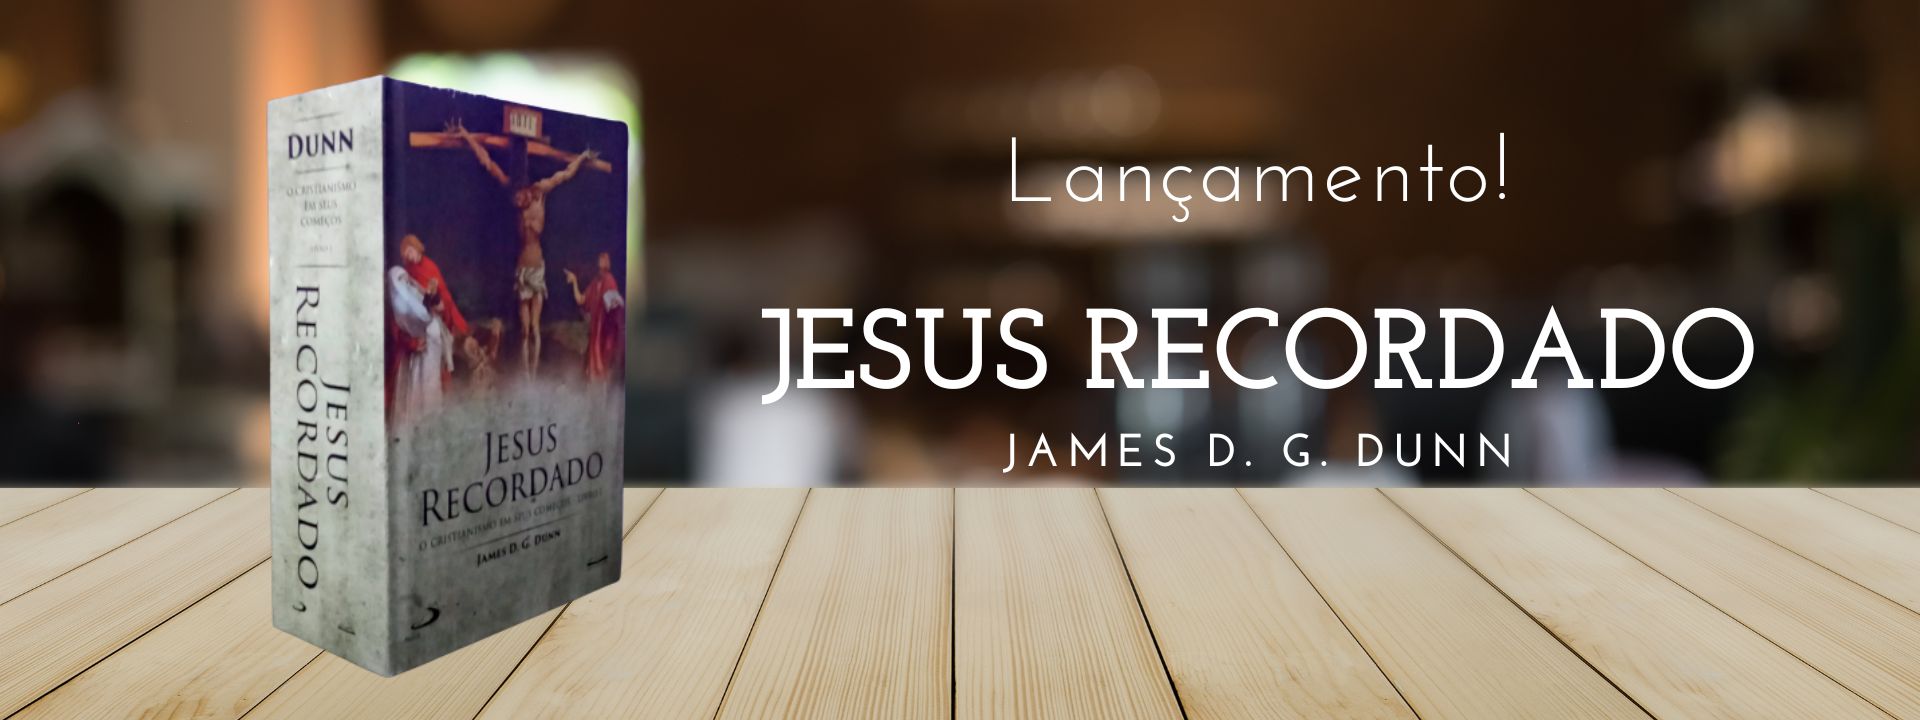 Jesus Recordado: O Cristianismo Em Seus Começos - Livro 1 [James Dunn]